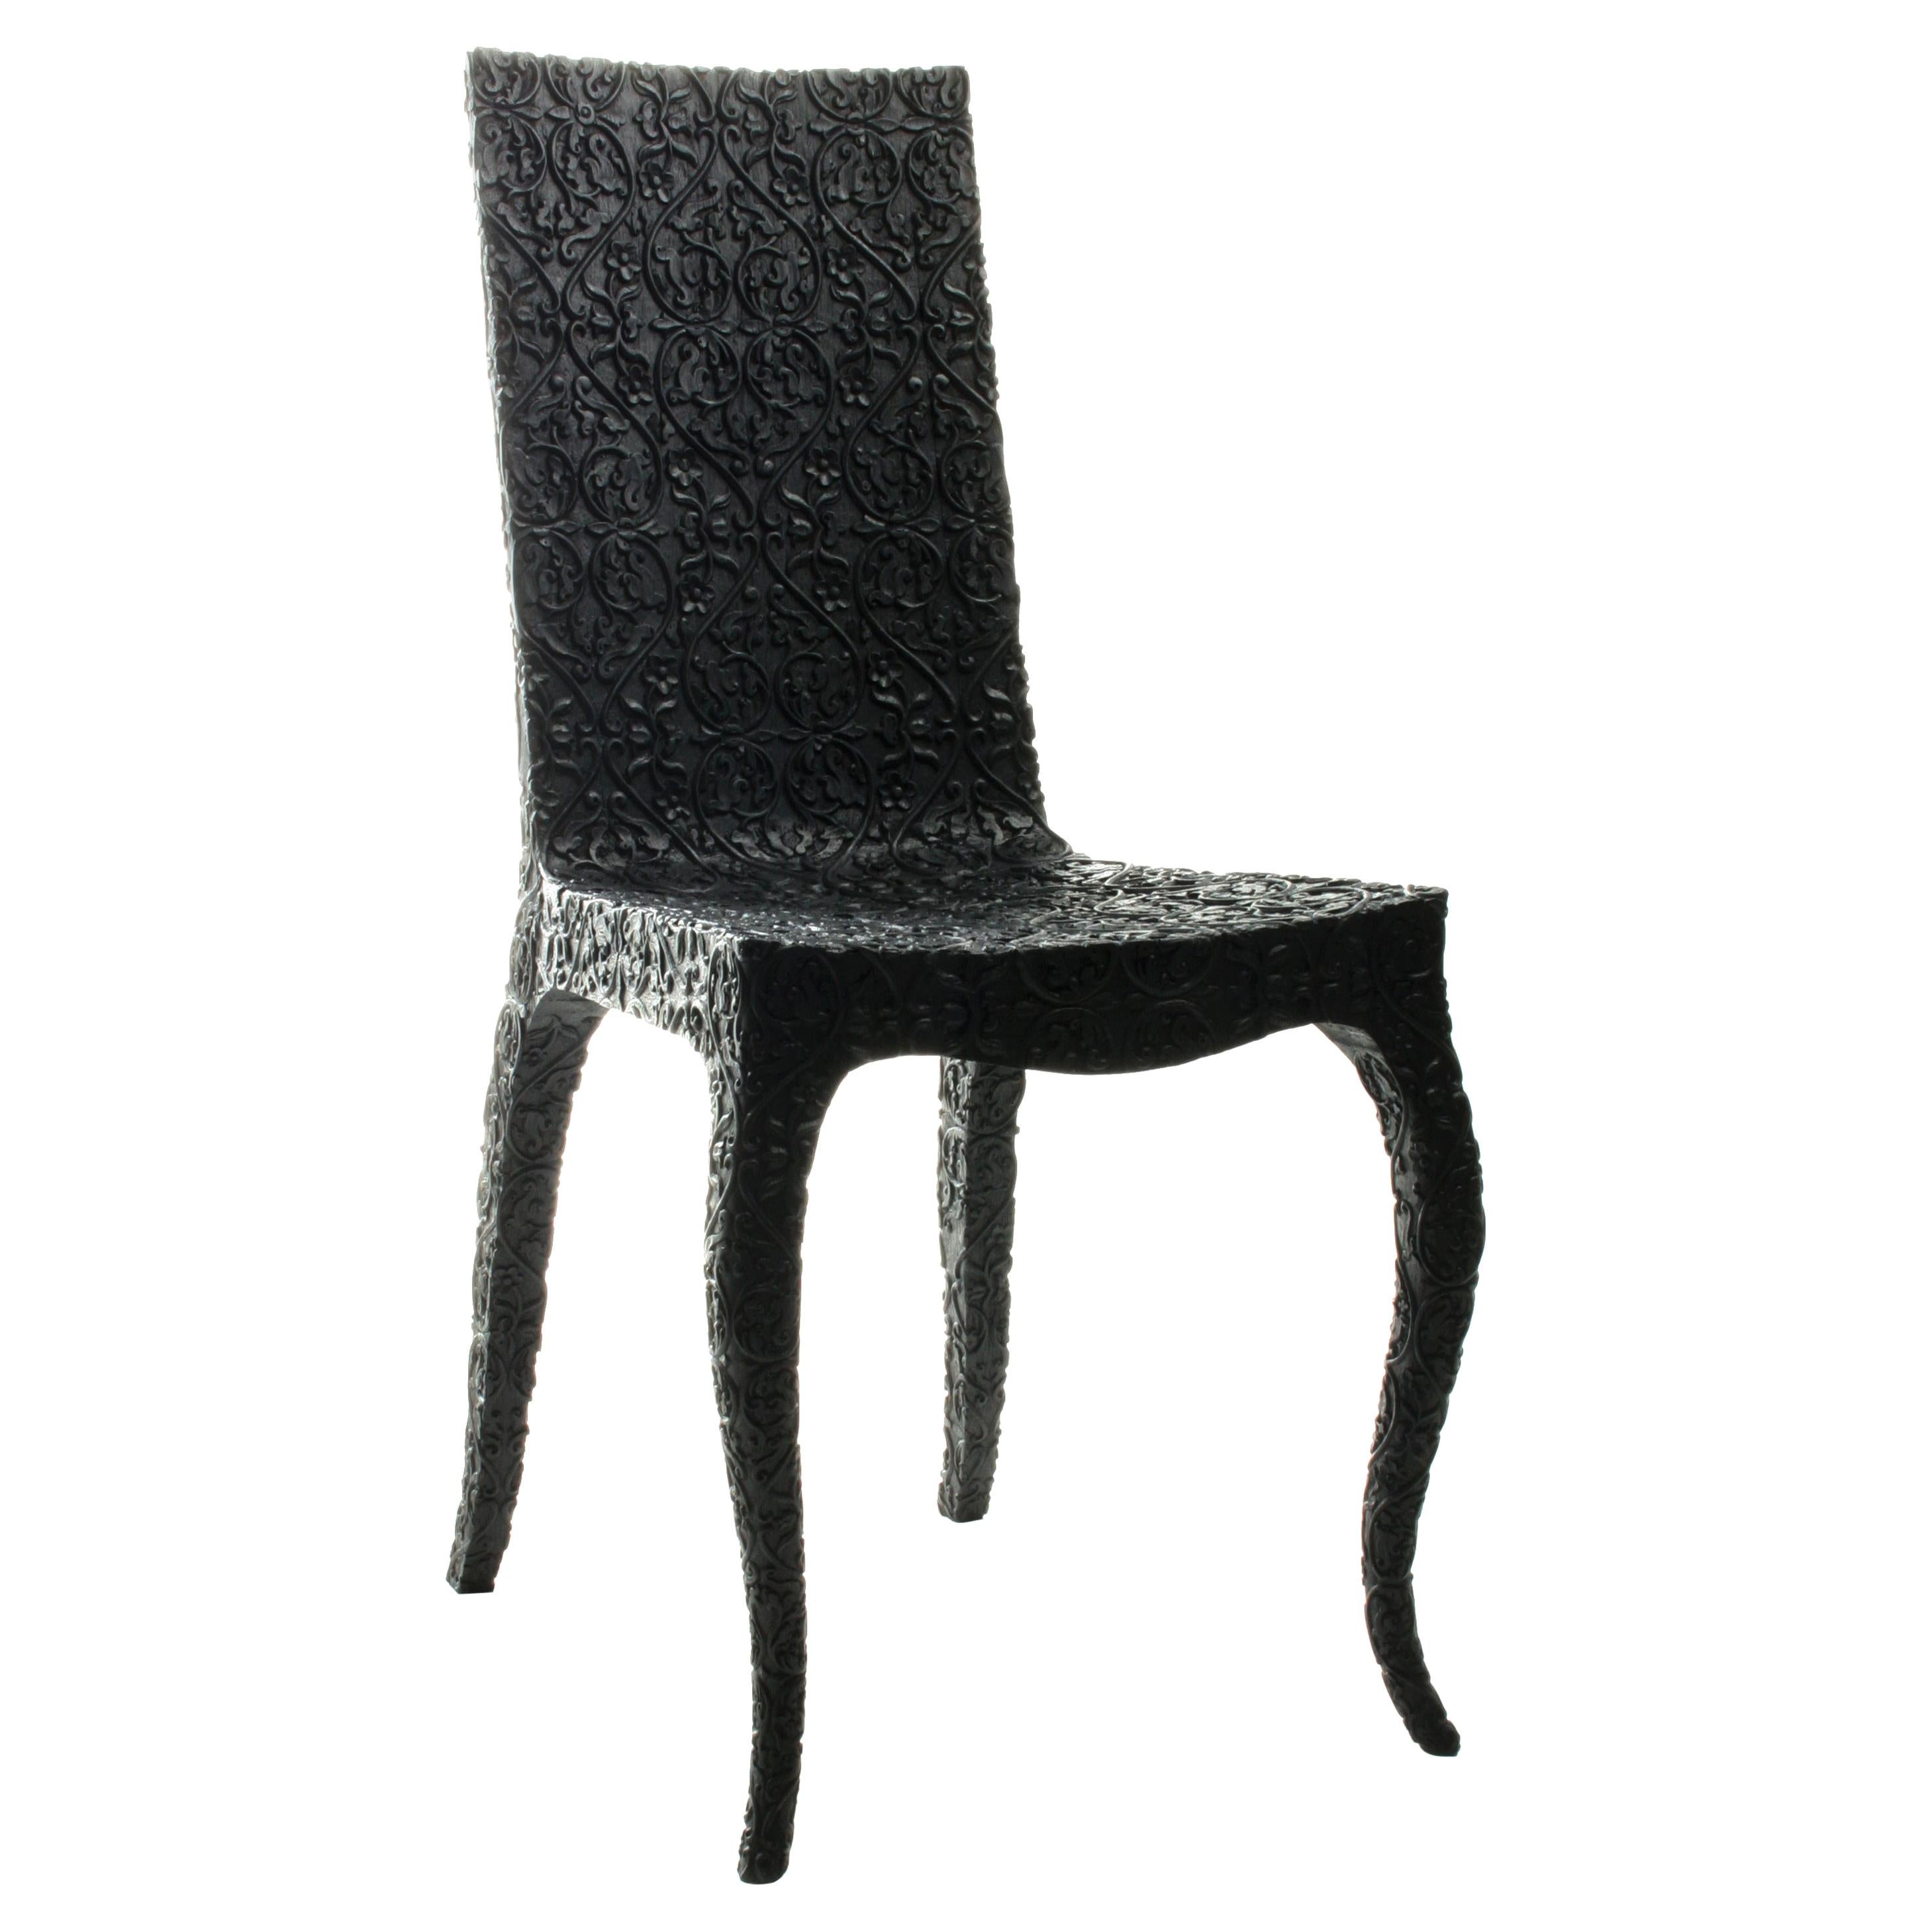 Chaise sculptée, par Marcel Wanders, chaise sculptée à la main, 2008, noire, édition limitée